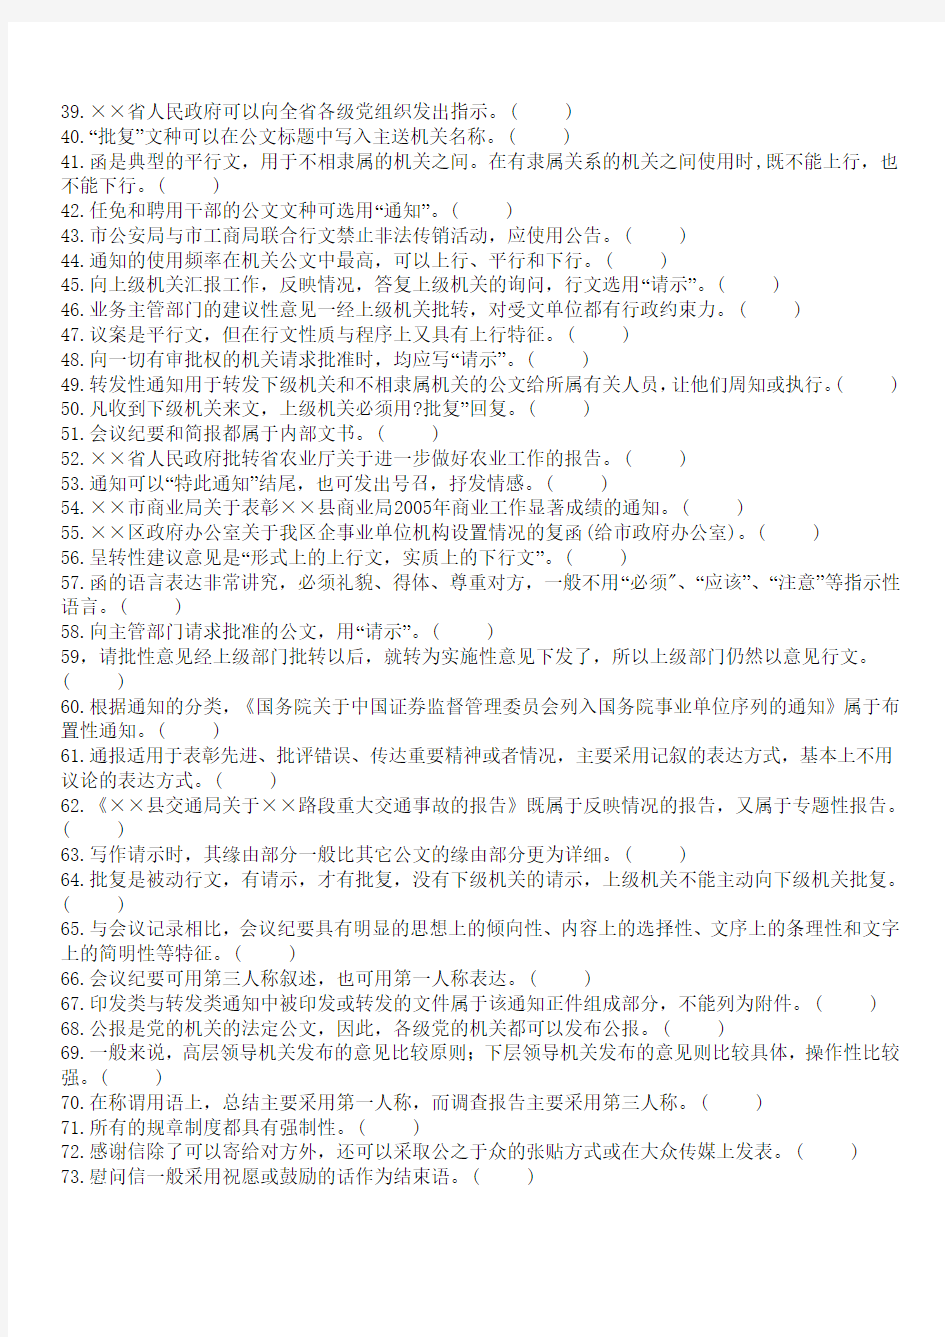 重庆市事业单位招聘《综合基础知识-公文写作》复习题(文字版)